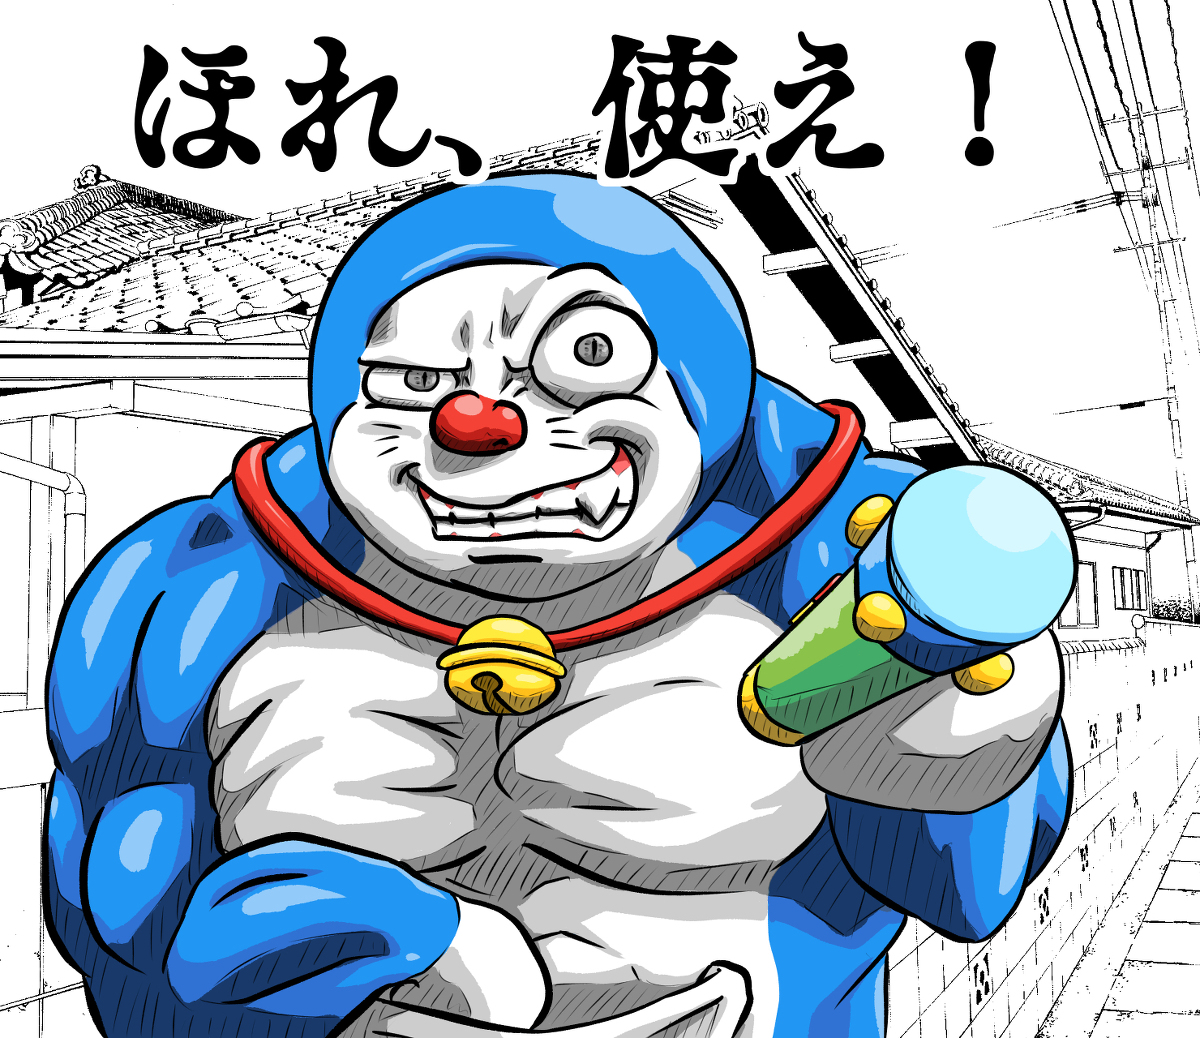 Fan cuồng mèo máy Doraemon ơi, bạn sẽ không thể cưỡng lại được sức hút của những bức ảnh đáng yêu với nhân vật mèo máy huyền thoại này. Hãy cùng đắm mình vào thế giới của Doraemon và bạn bè của hắn nhé.